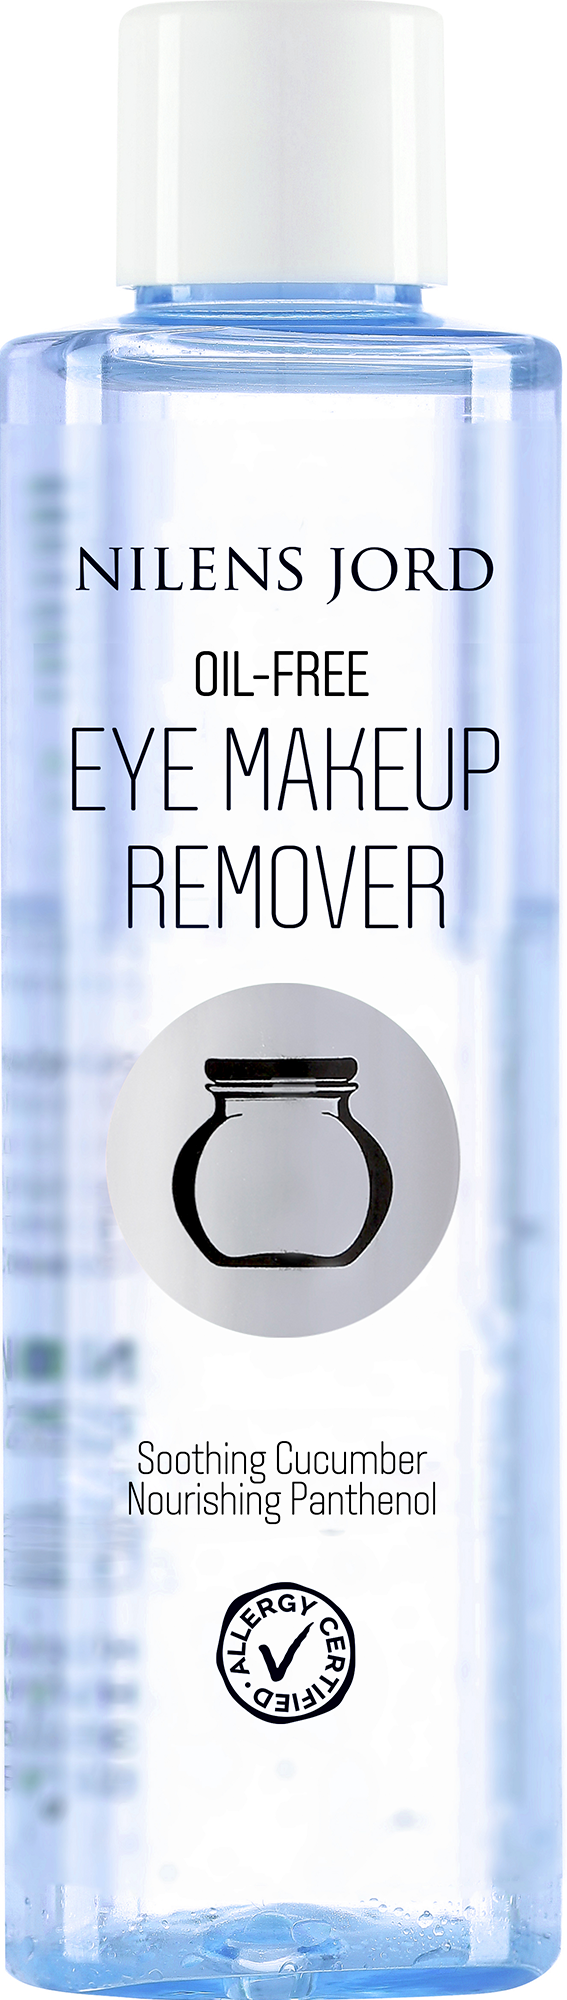 Billede af Nilens Jord Oil-Free Eye Makeup Remover 125 ml.